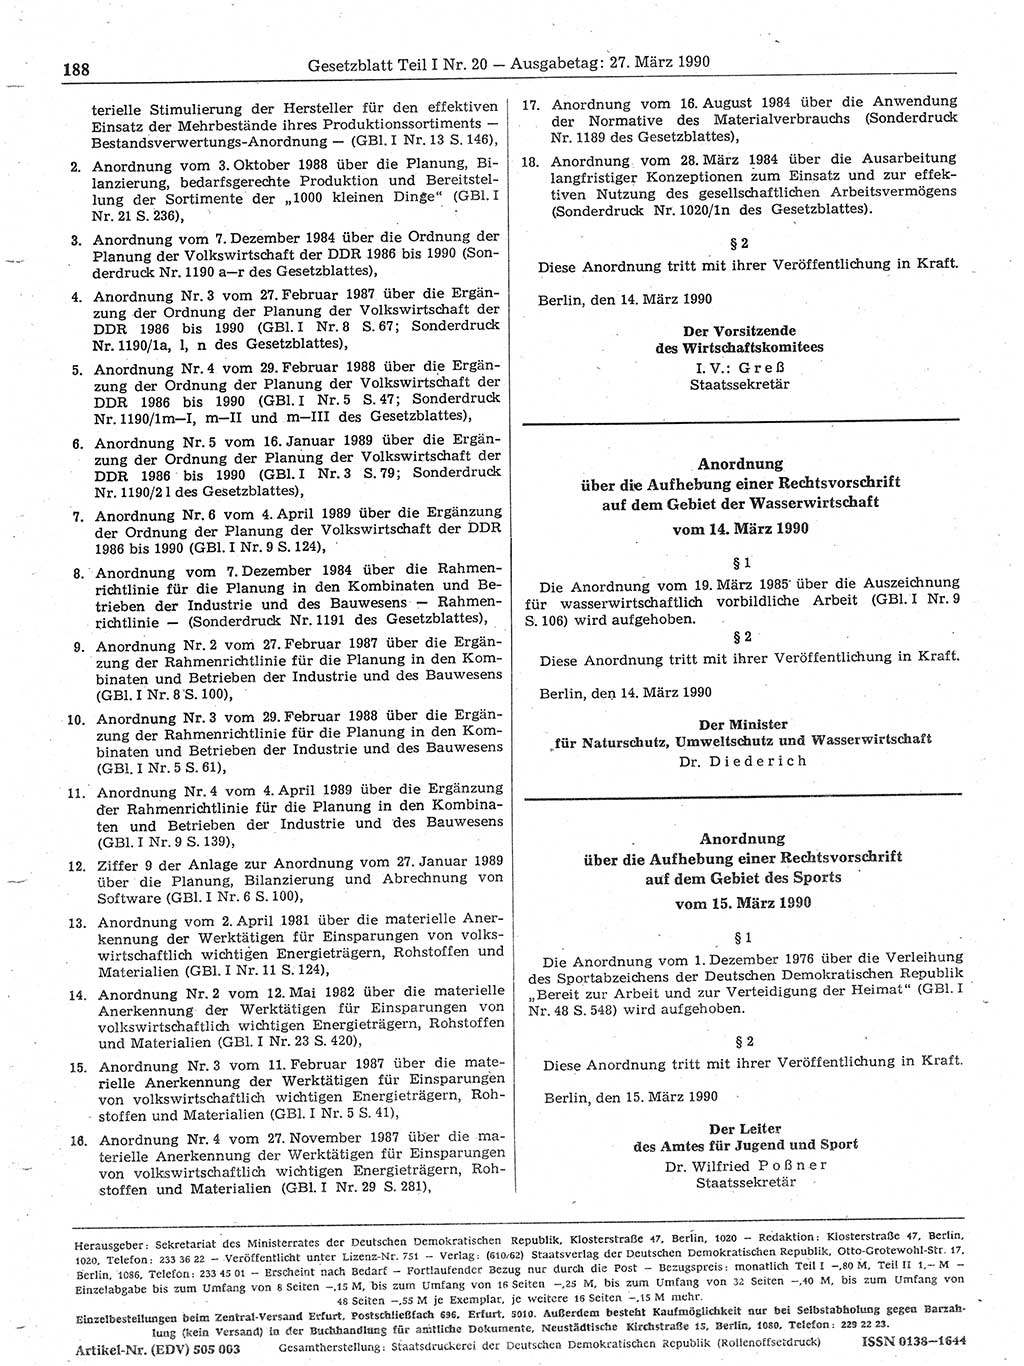 Gesetzblatt (GBl.) der Deutschen Demokratischen Republik (DDR) Teil Ⅰ 1990, Seite 188 (GBl. DDR Ⅰ 1990, S. 188)